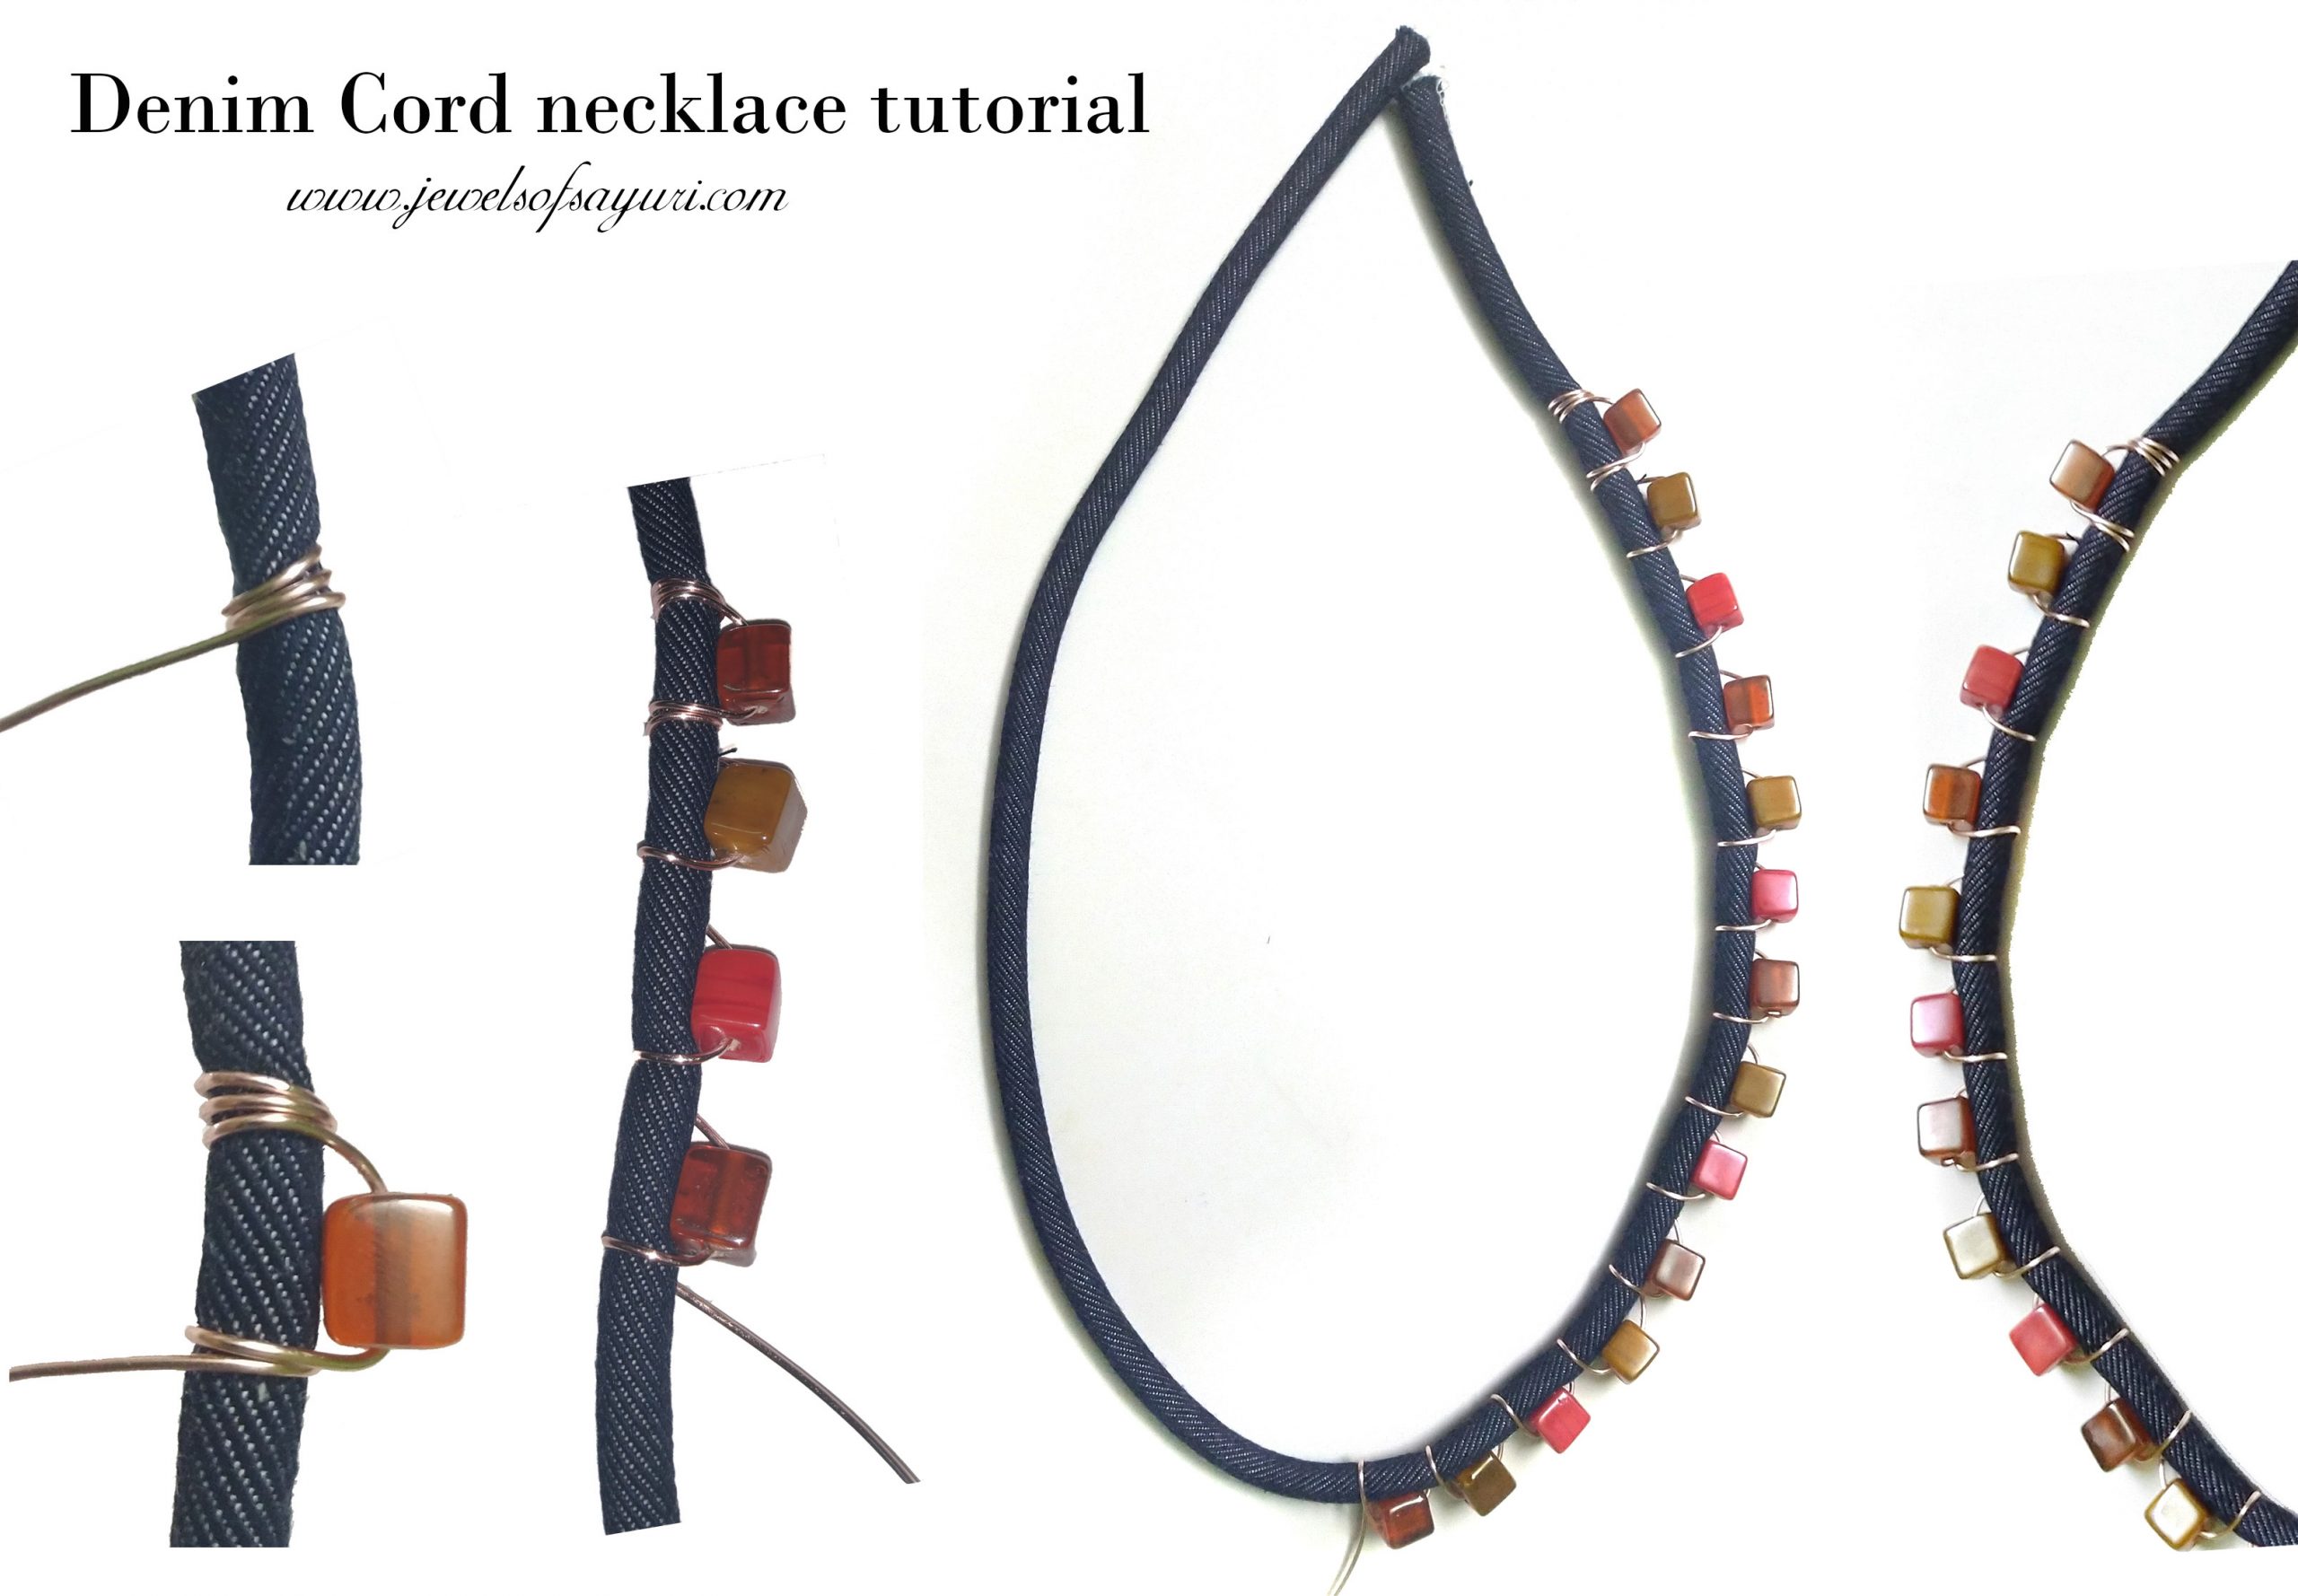 Denim cord necklace tutorial diy